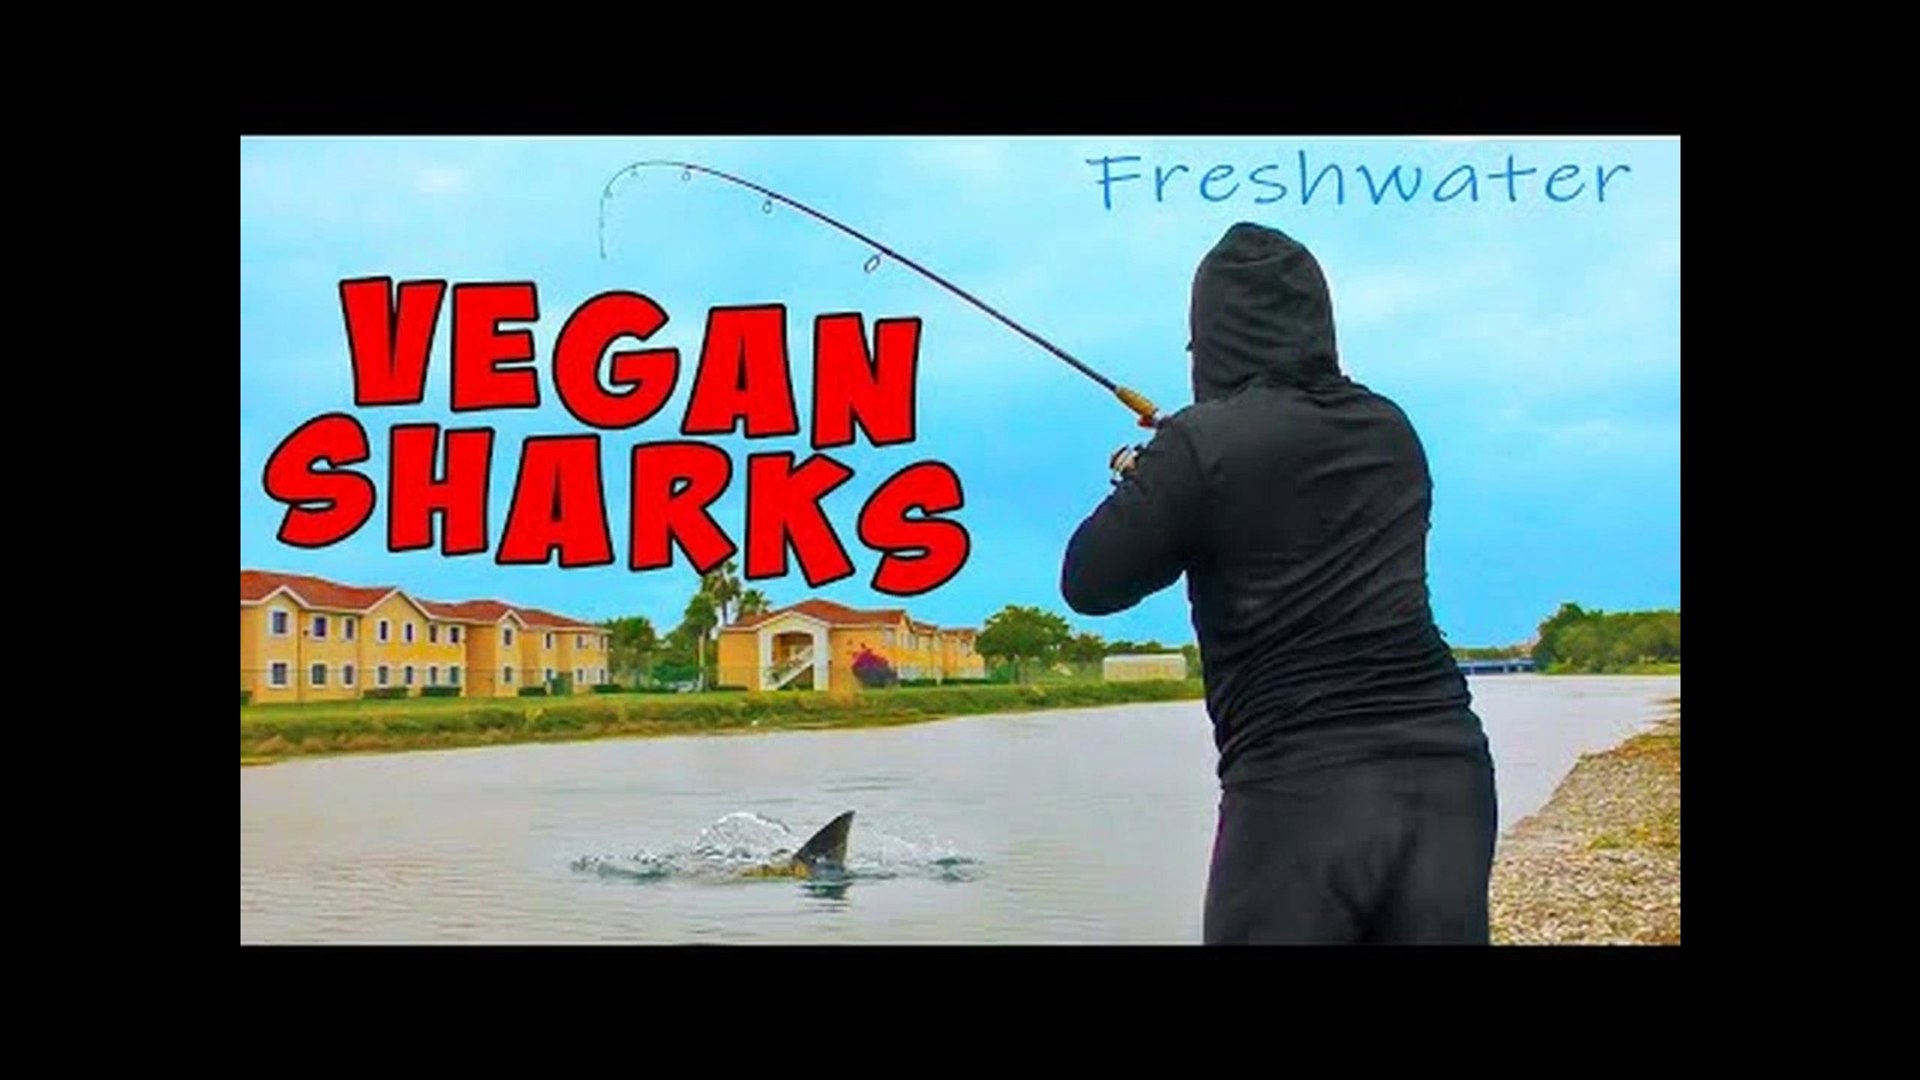 VEGAN SHARKS Topwater Blowups!!! Freshwater Shark Fishing